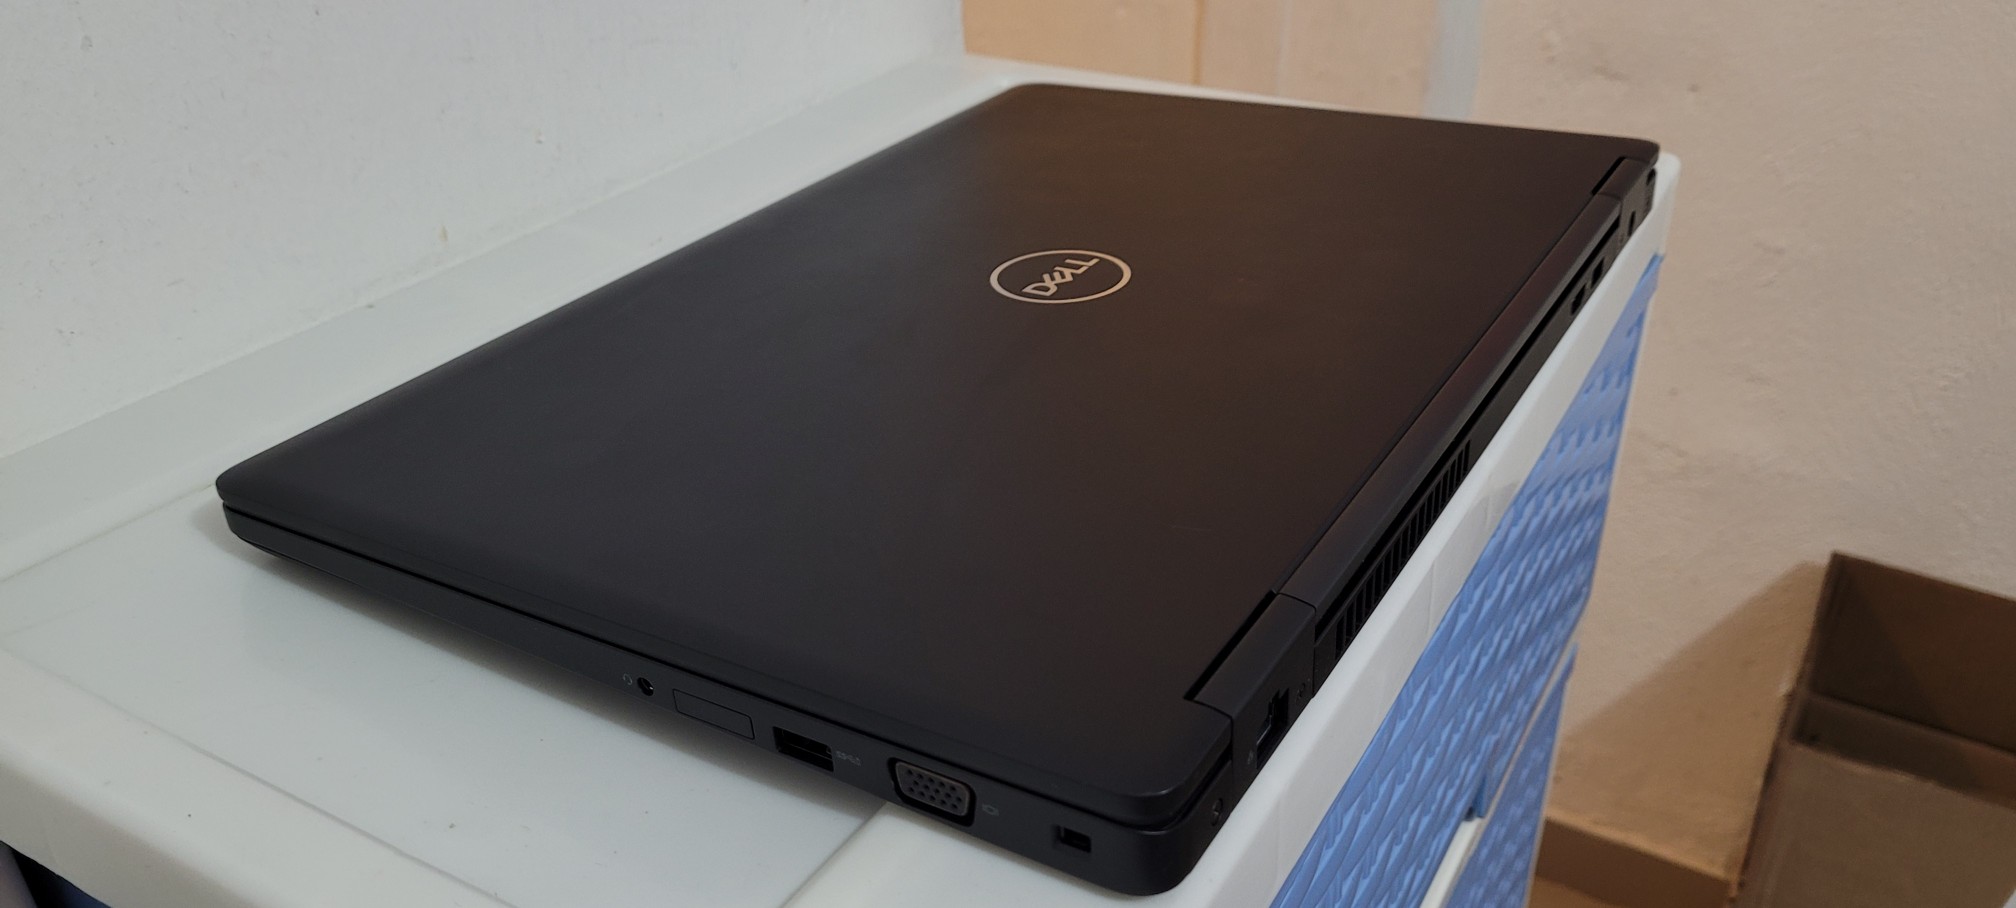 computadoras y laptops - Dell 5580 17 Pulg Core i5 7ma Gen Ram 8gb ddr4 Disco 128gb SSD New 2